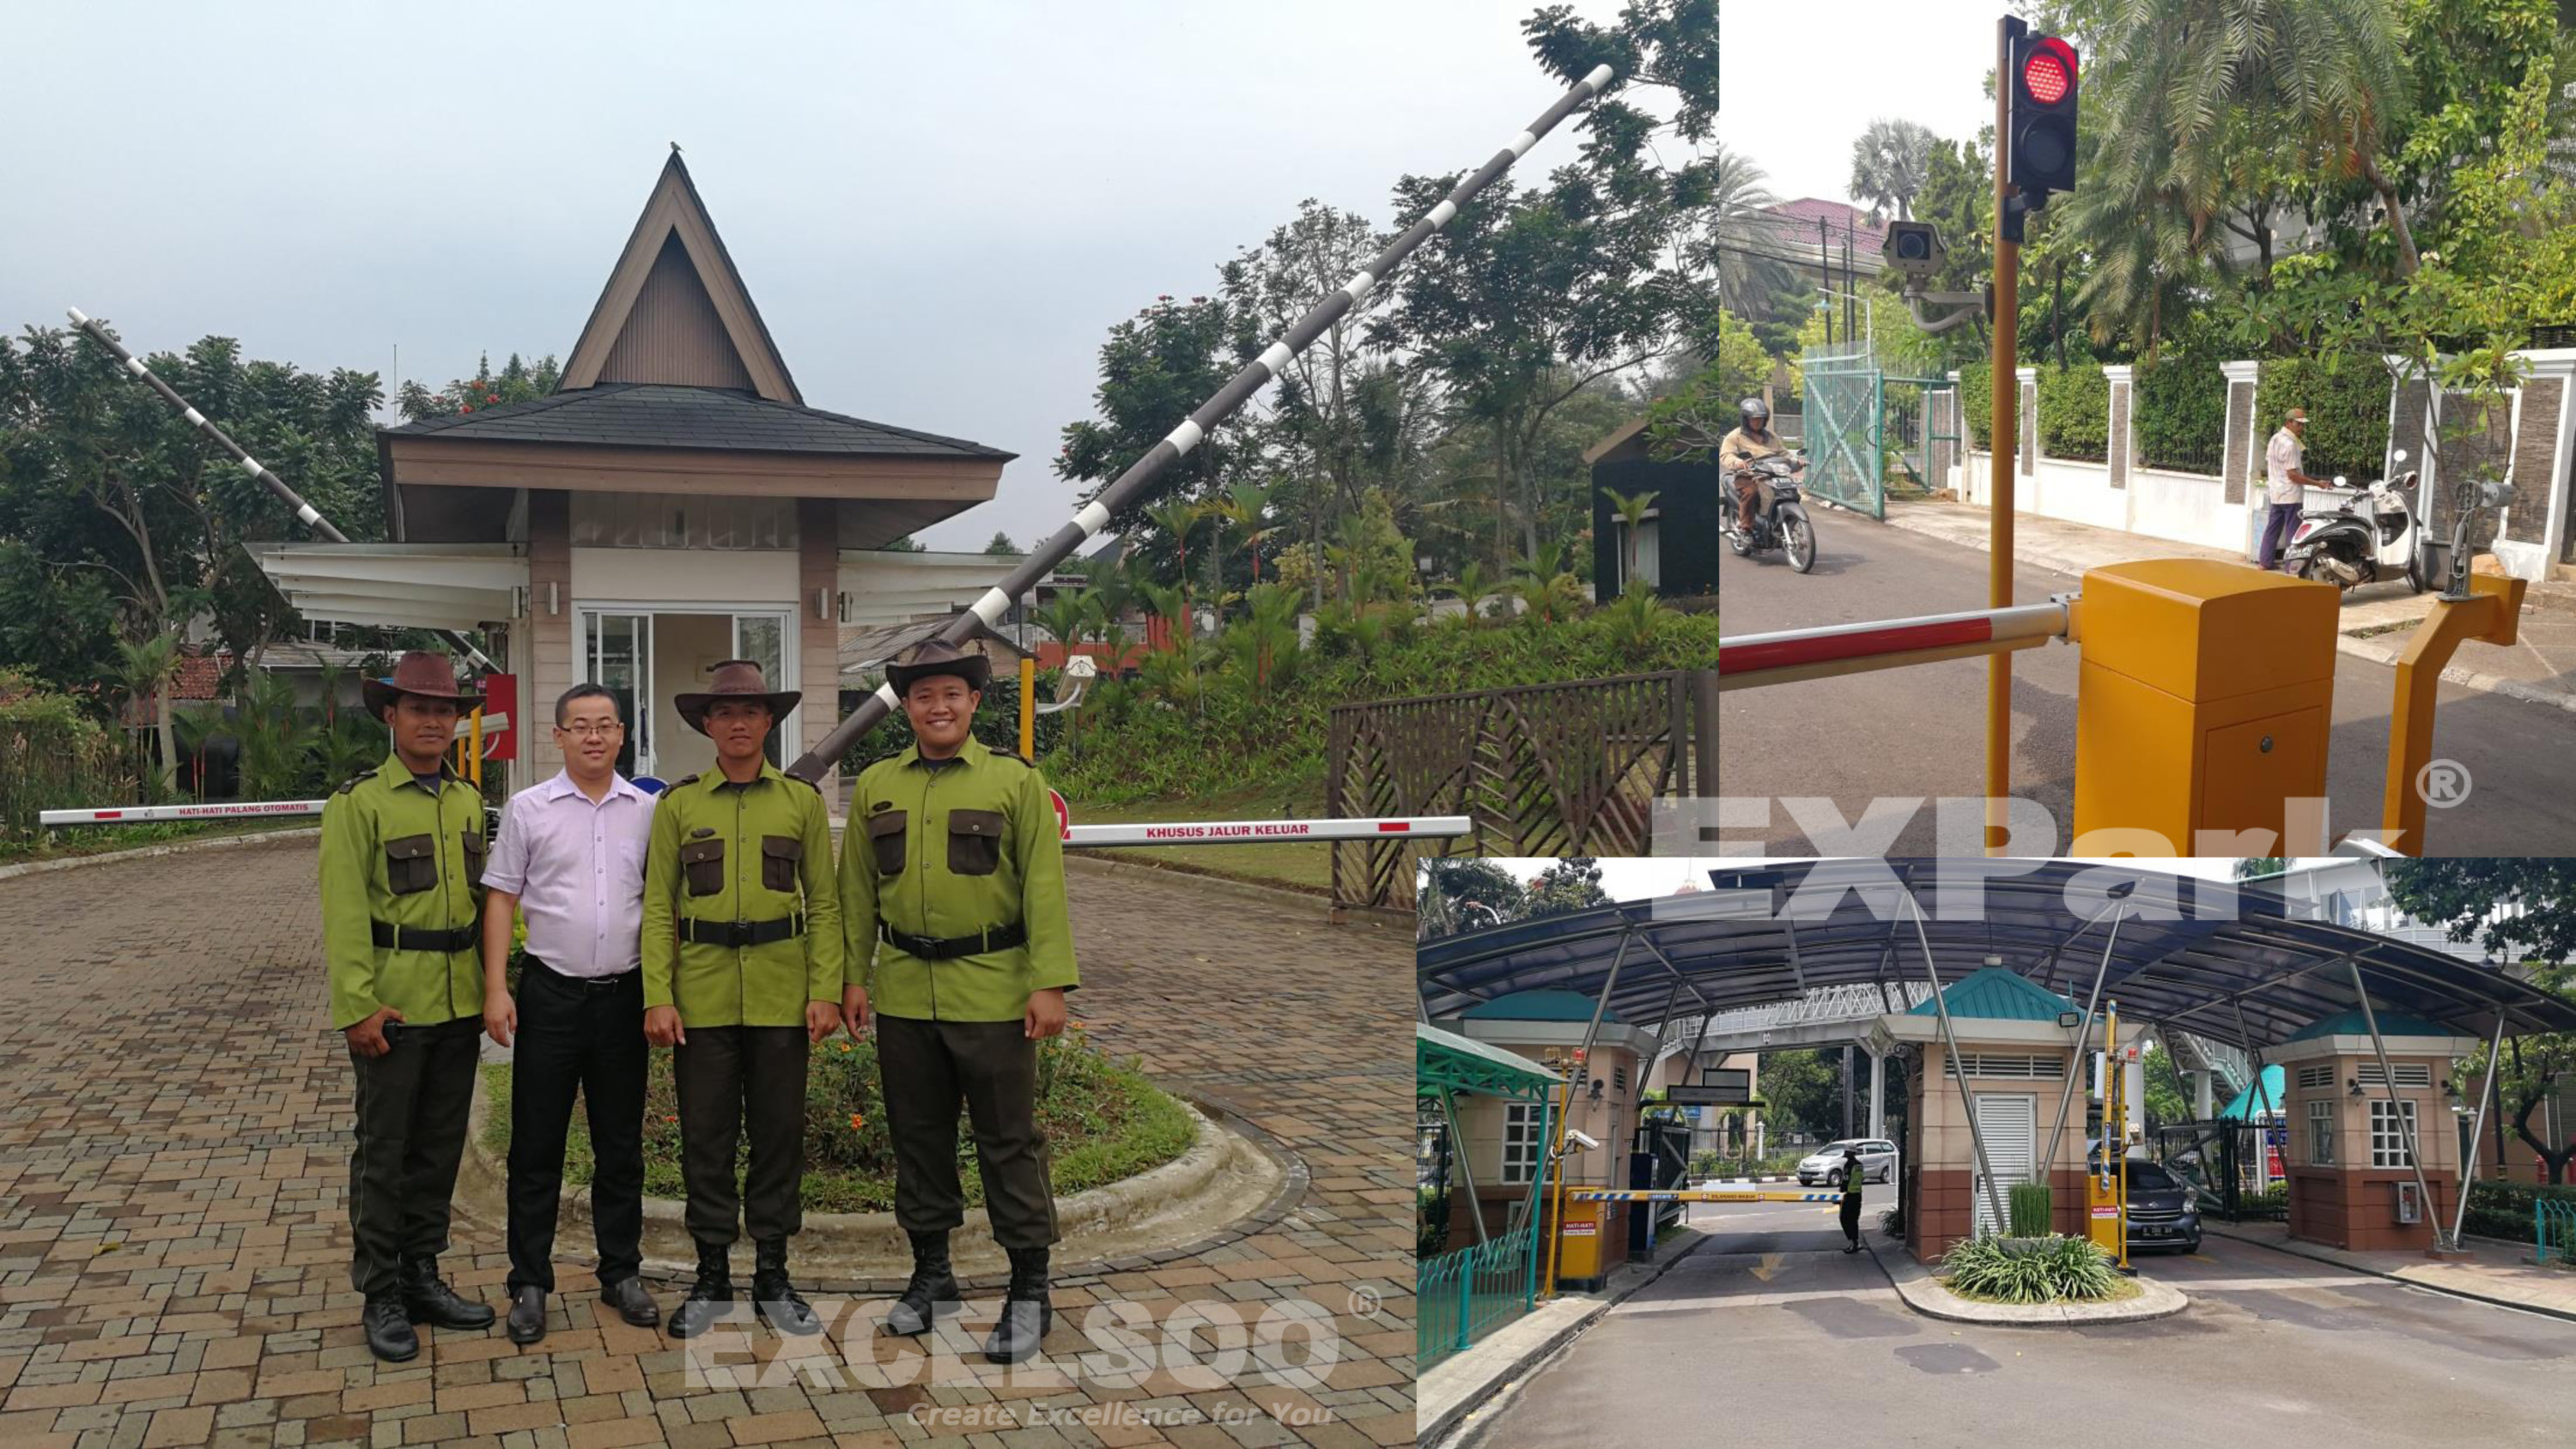 Excelsoo Case Reference: Vimala Hills Villa & Resort Gadog Smart Parking System in Bogor, Jawa Barat, Indonesia